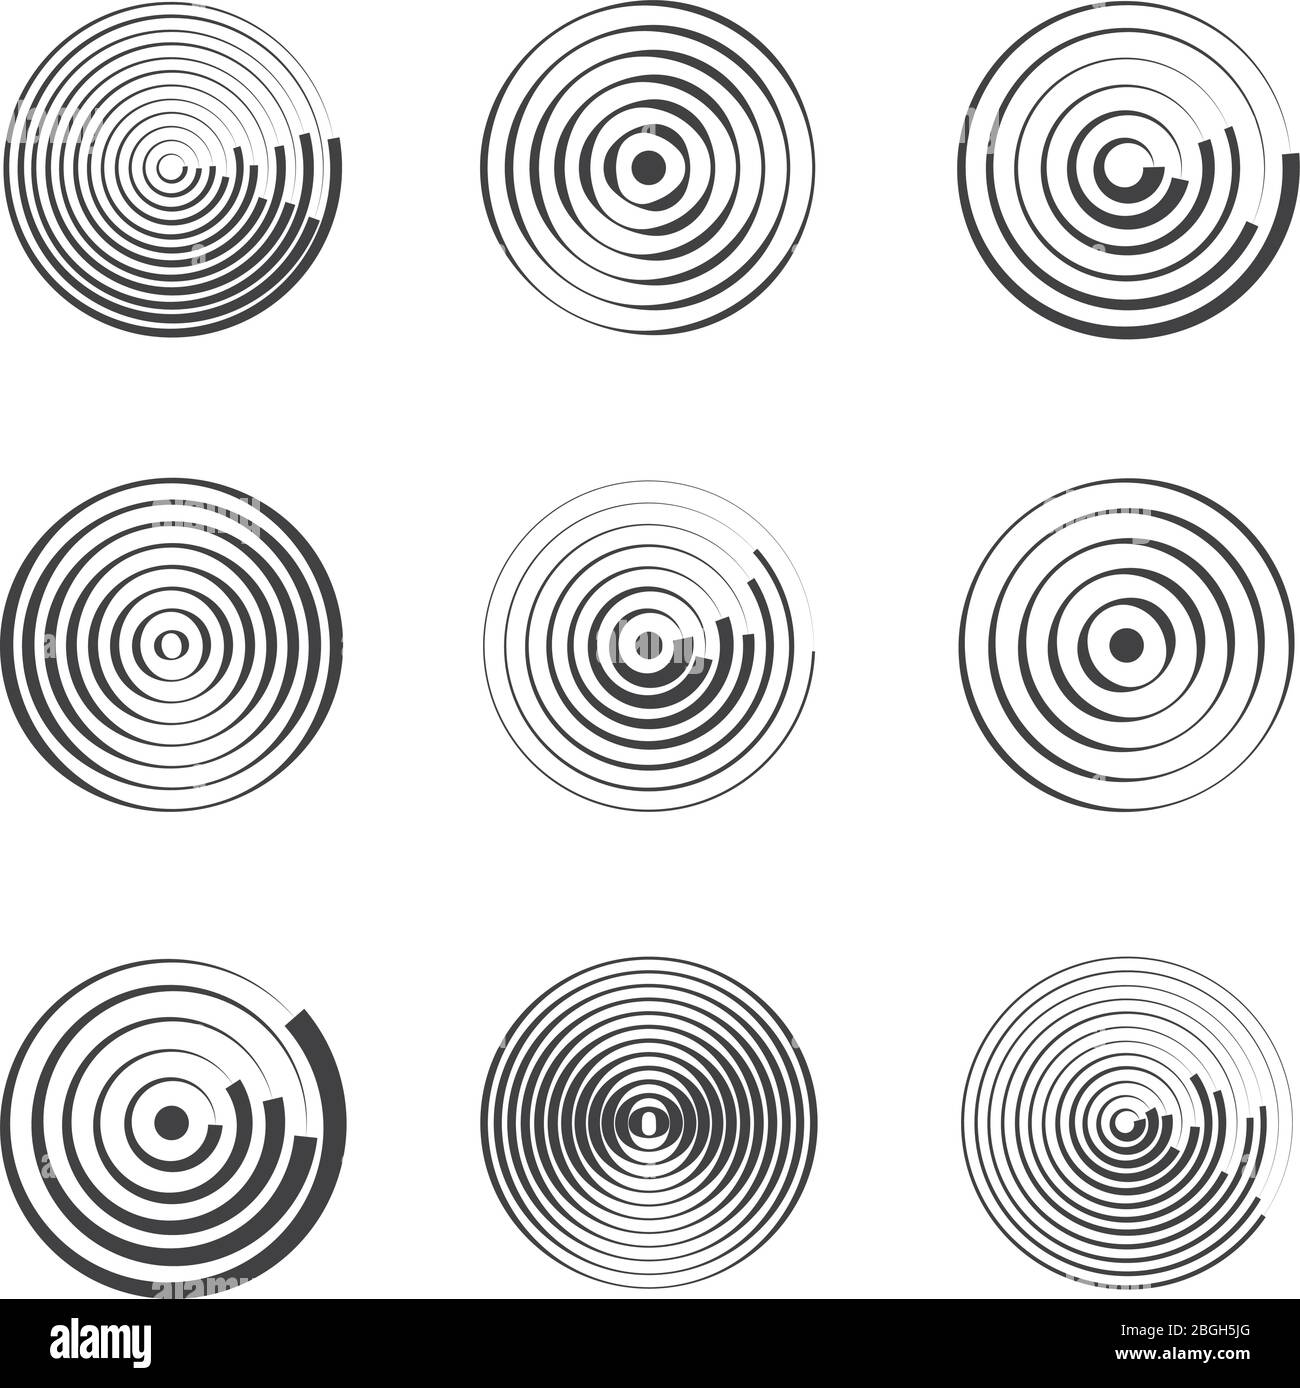 Konzentrische Kreise abstrakte geometrische Vektormuster. Kreisförmige Formen und runde Wellen. Ringe mit radialen Linien. Kreisförmiges radiales Muster, Ringepizentrum-Abbildung Stock Vektor